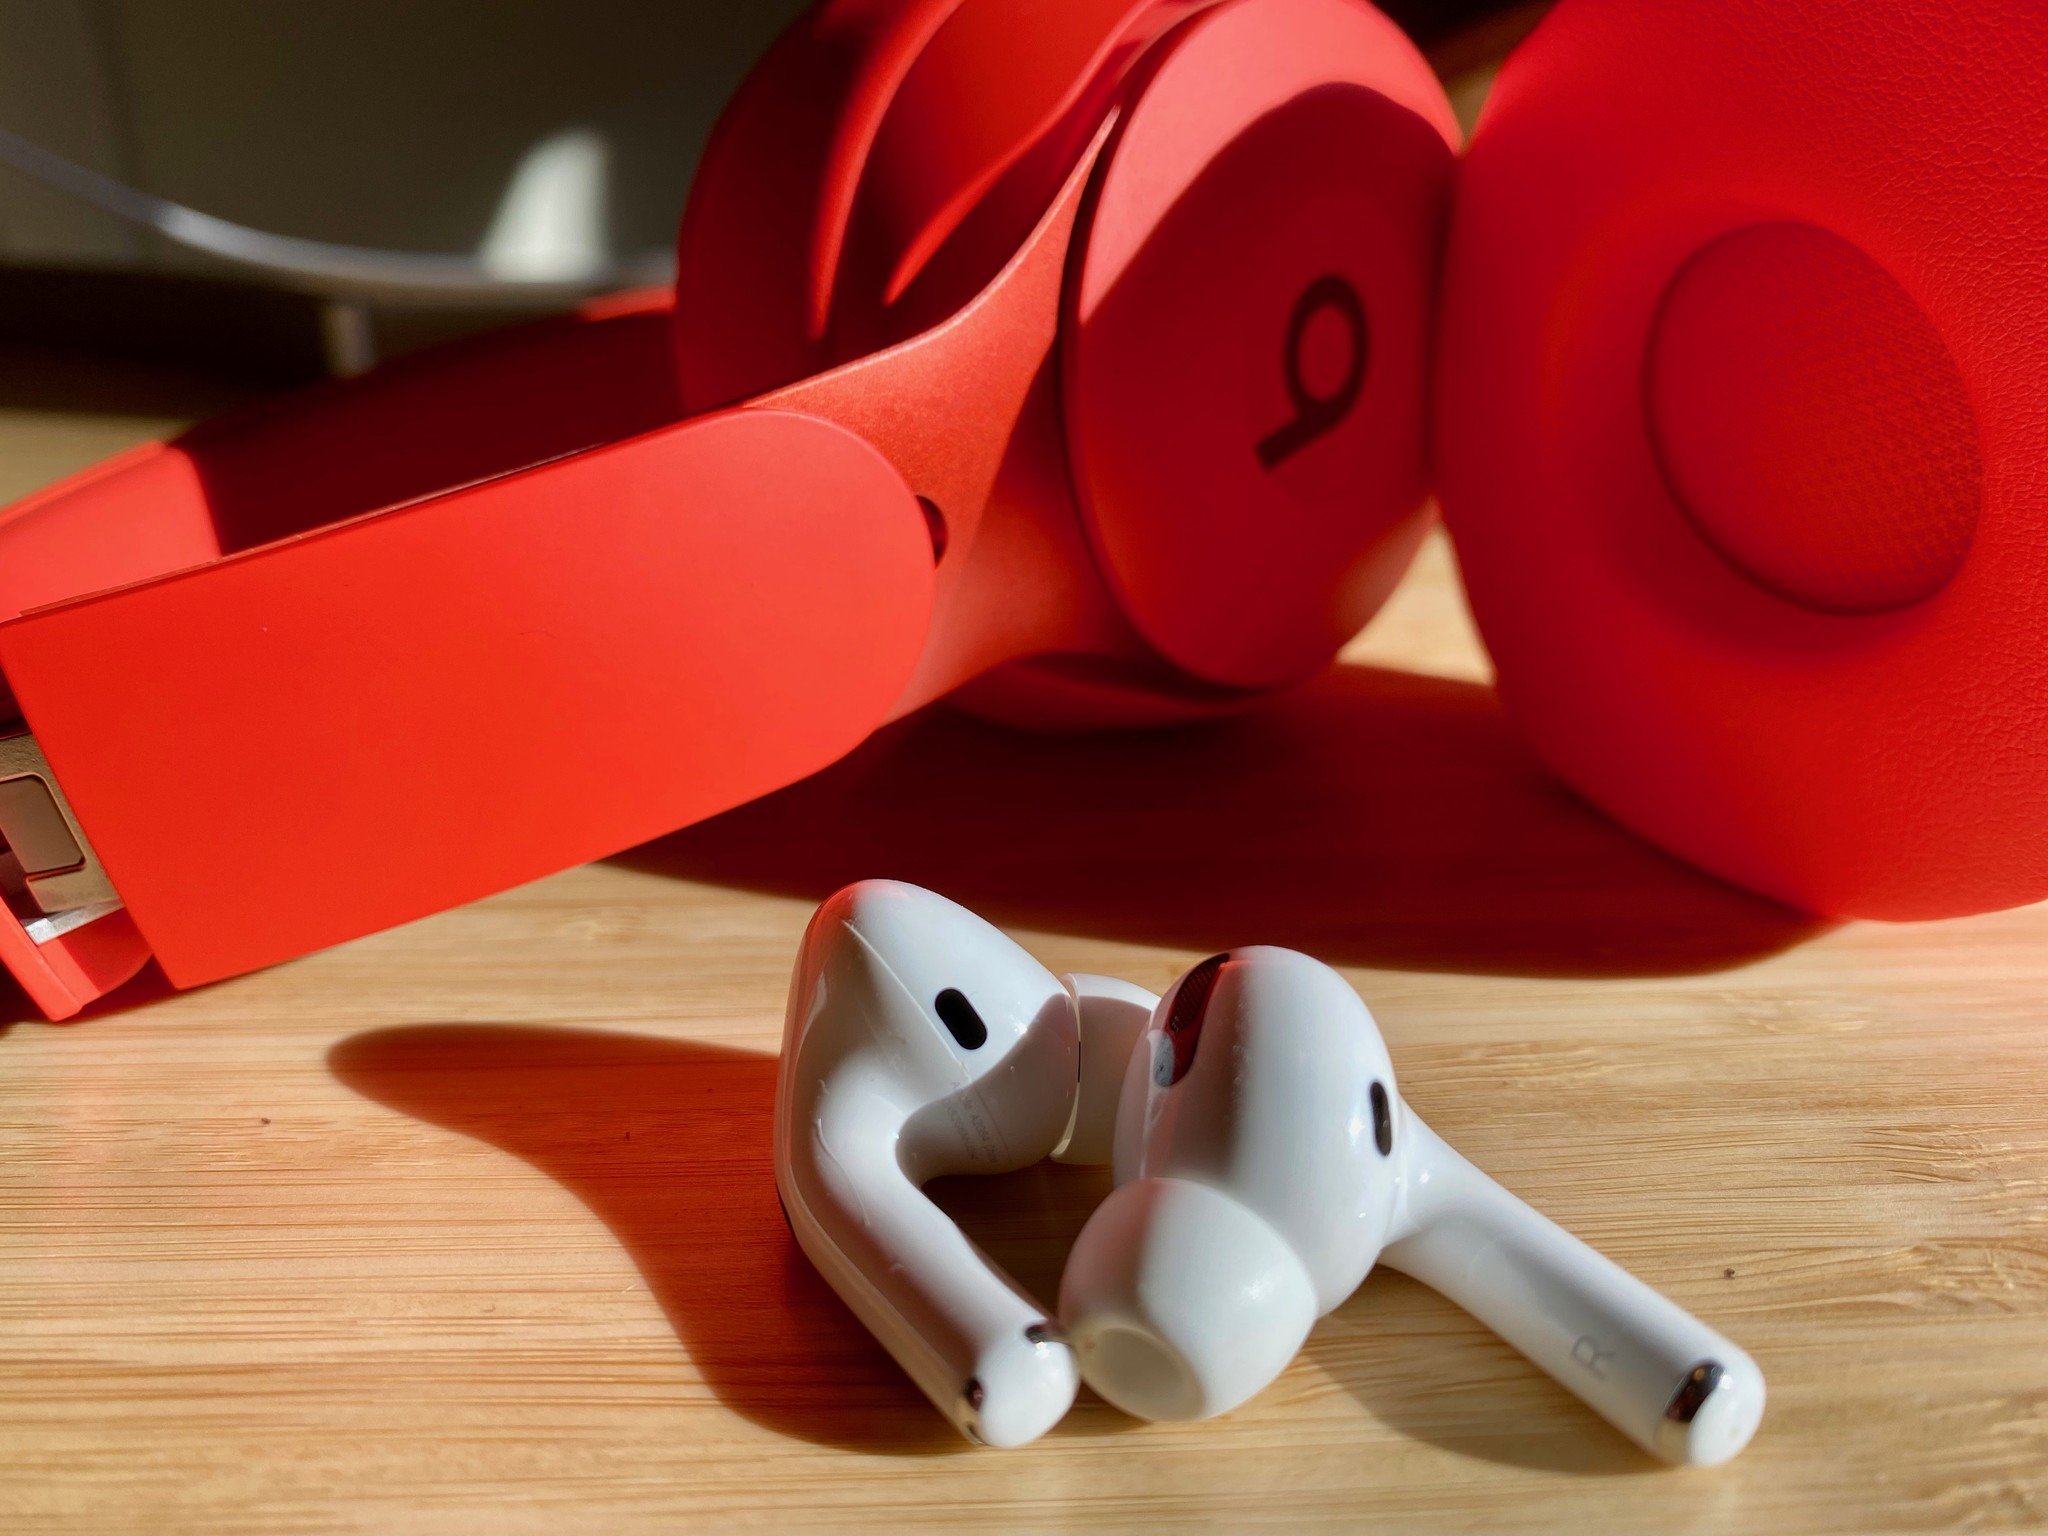 rumors that Apple will kill off Beats 